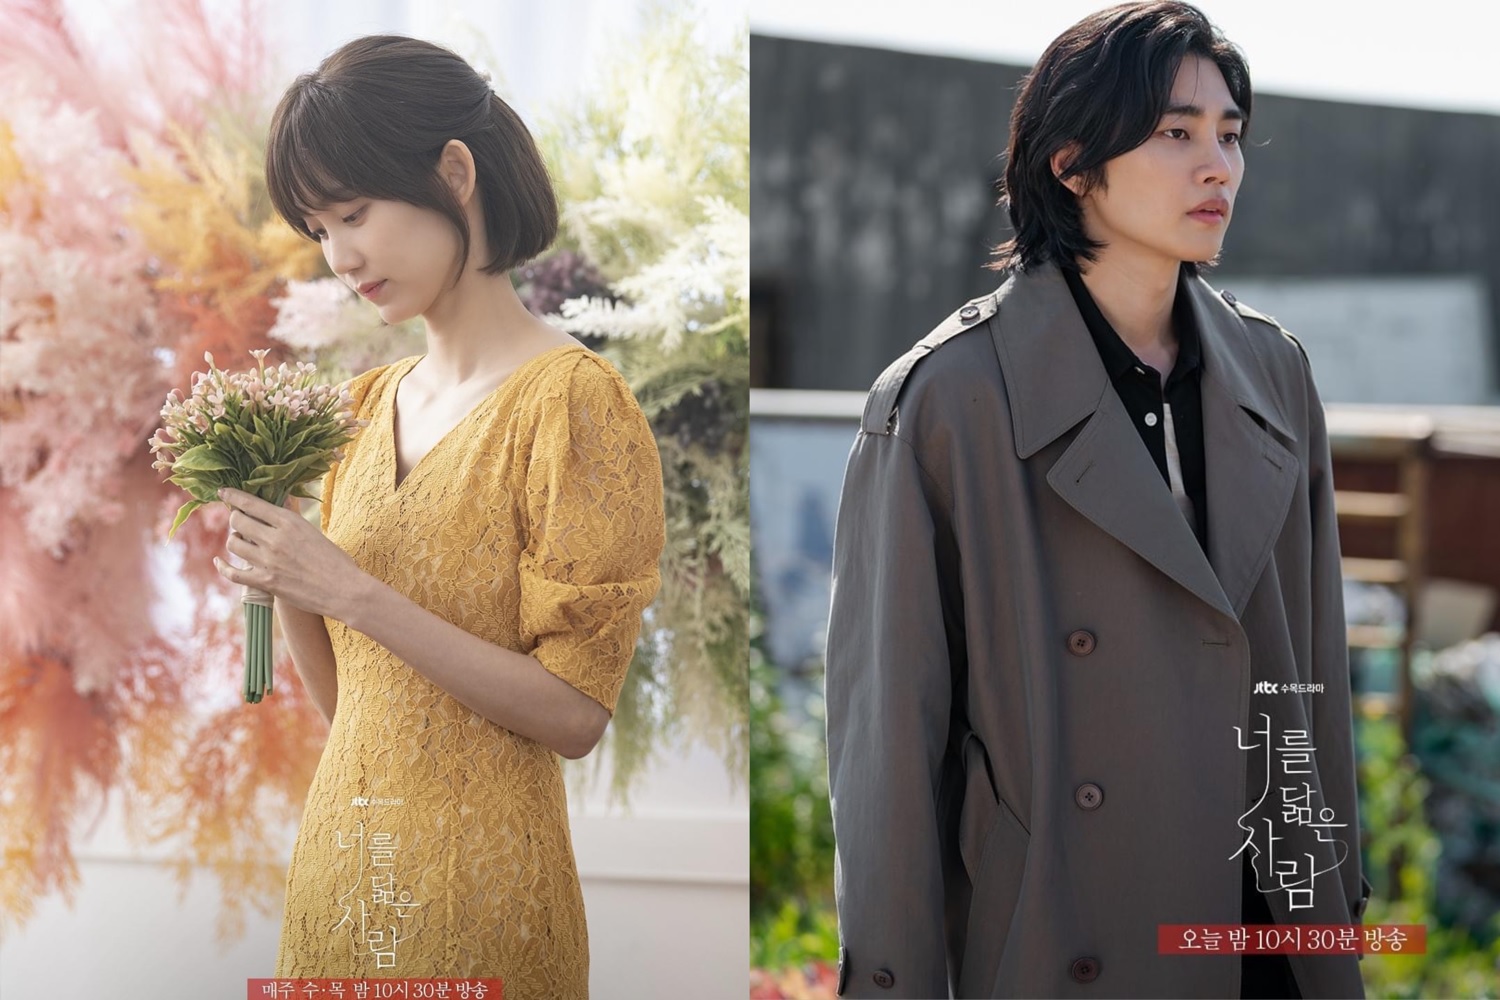 Nam chính yêu Park Min Young ở phim mới: Từng mê hoặc mỹ nhân Hẹn hò chốn công sở - Ảnh 6.